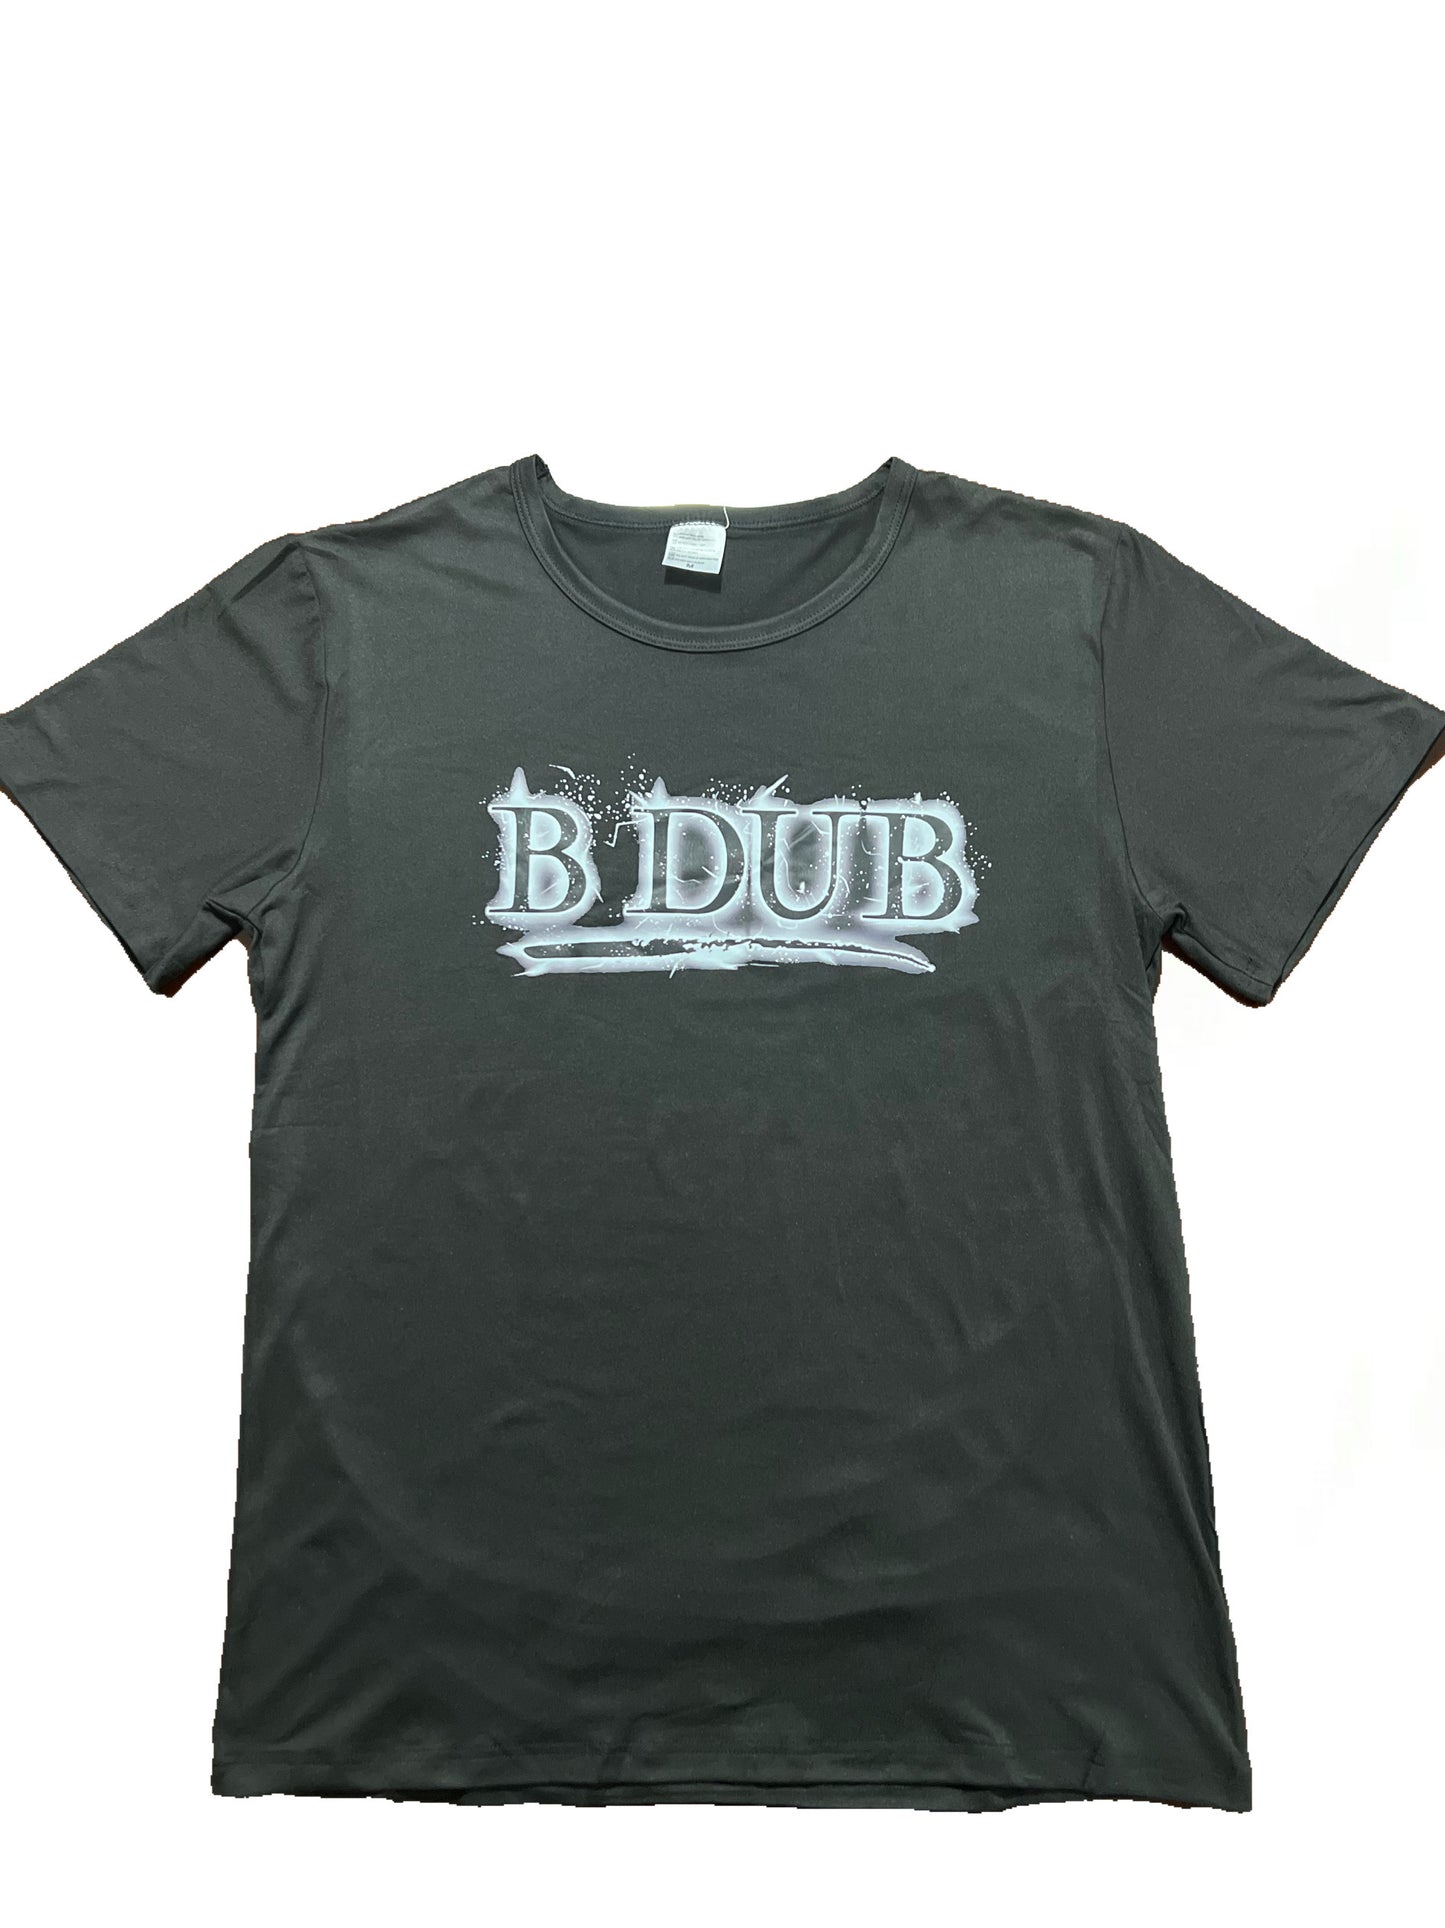 ALL BLACK Streetwear "B DUB" T-SHIRT